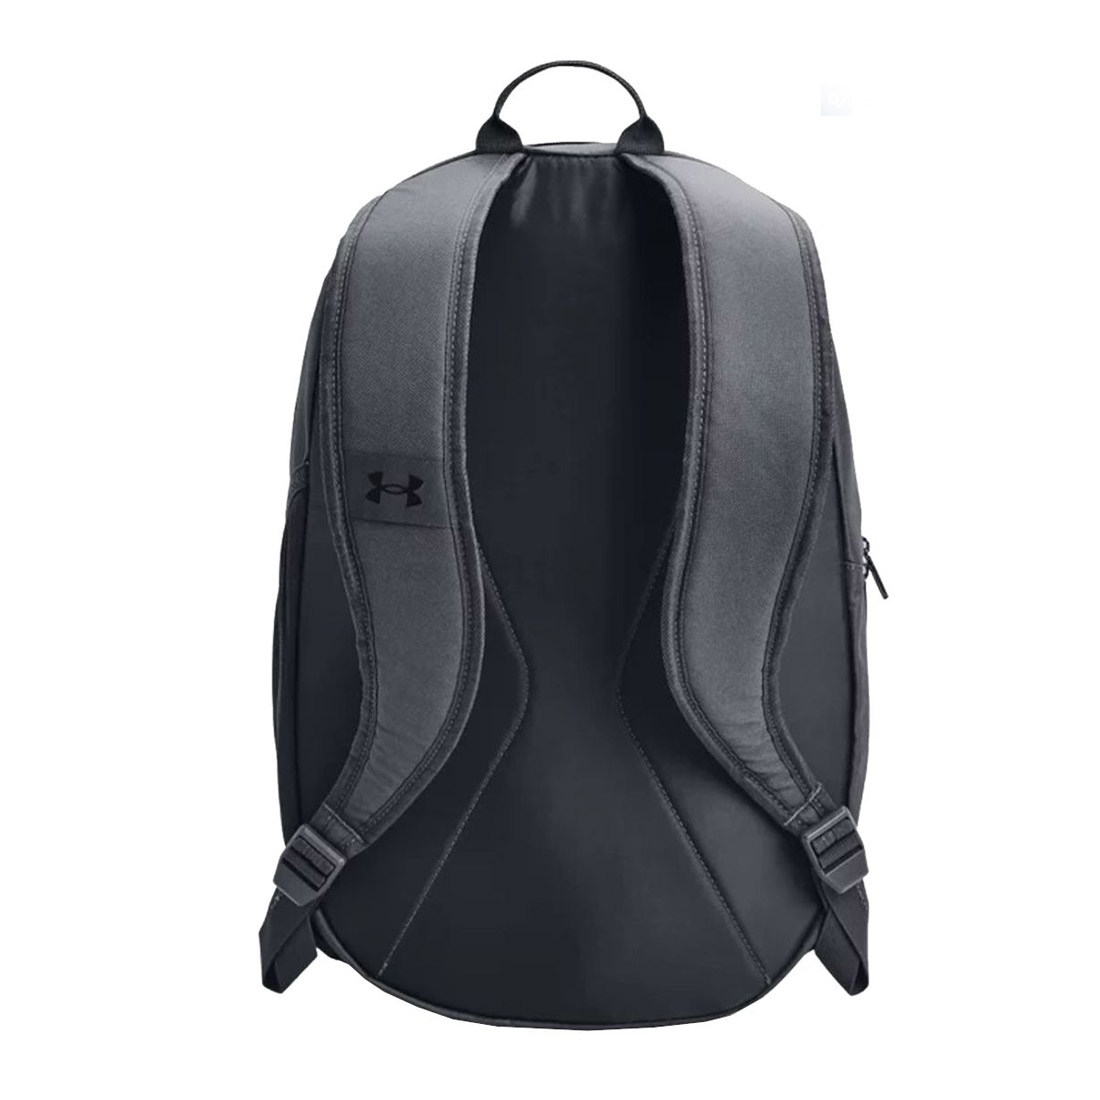 Under Armour Hustle Light Backpack Rucksack School Sports Bag Grey/Black - image 2 of 2